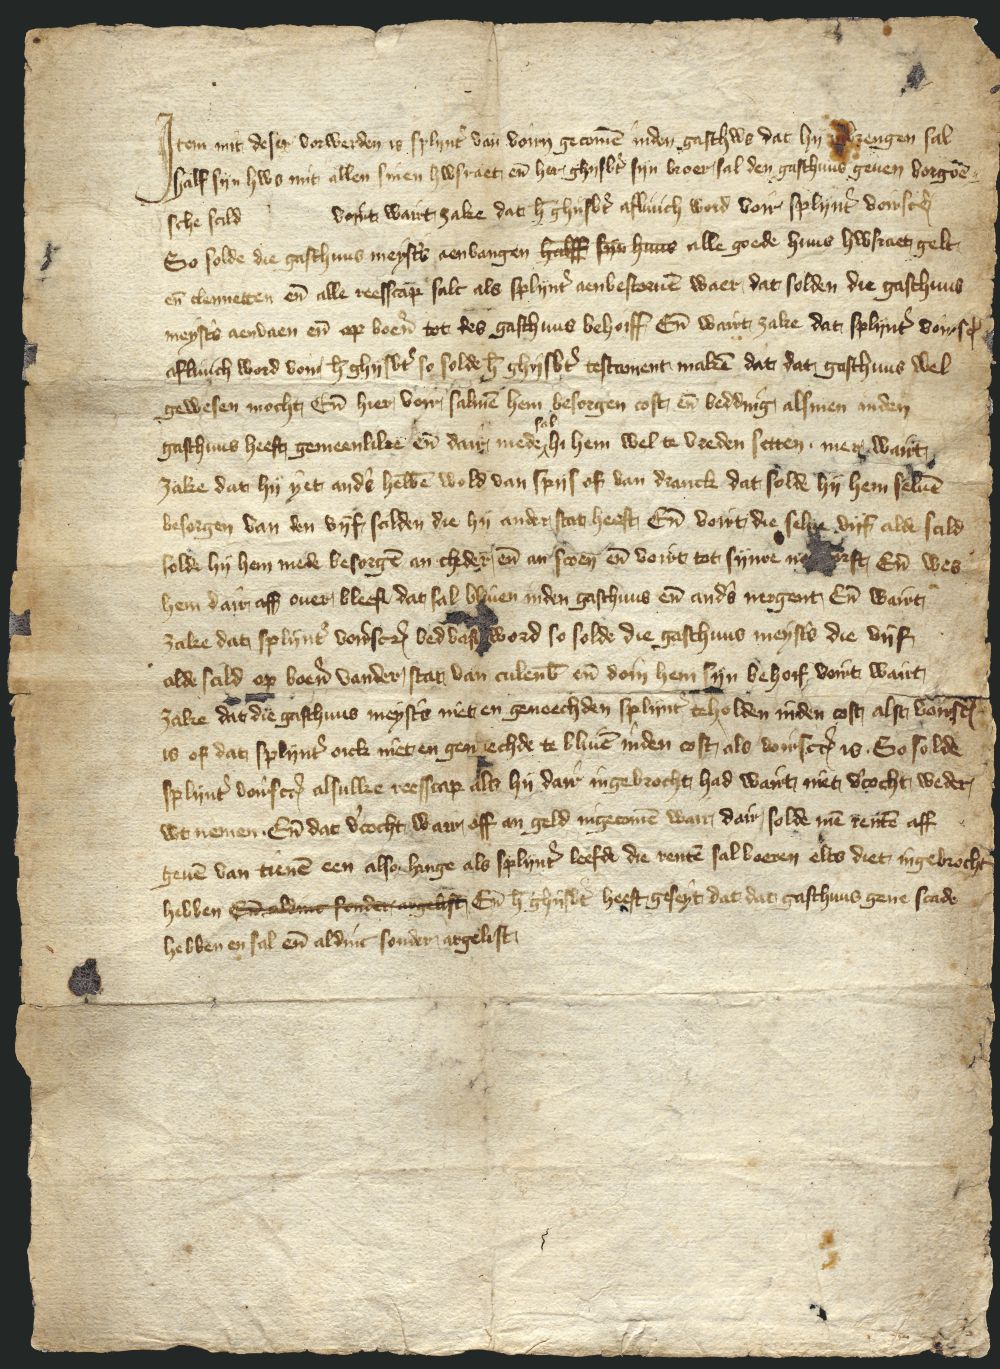 Akte uit 1437 over de voorwaarden waaronder Splijnter van Voern wordt opgenomen in het gasthuis in Culemborg. (Regionaal archief Rivierenland)